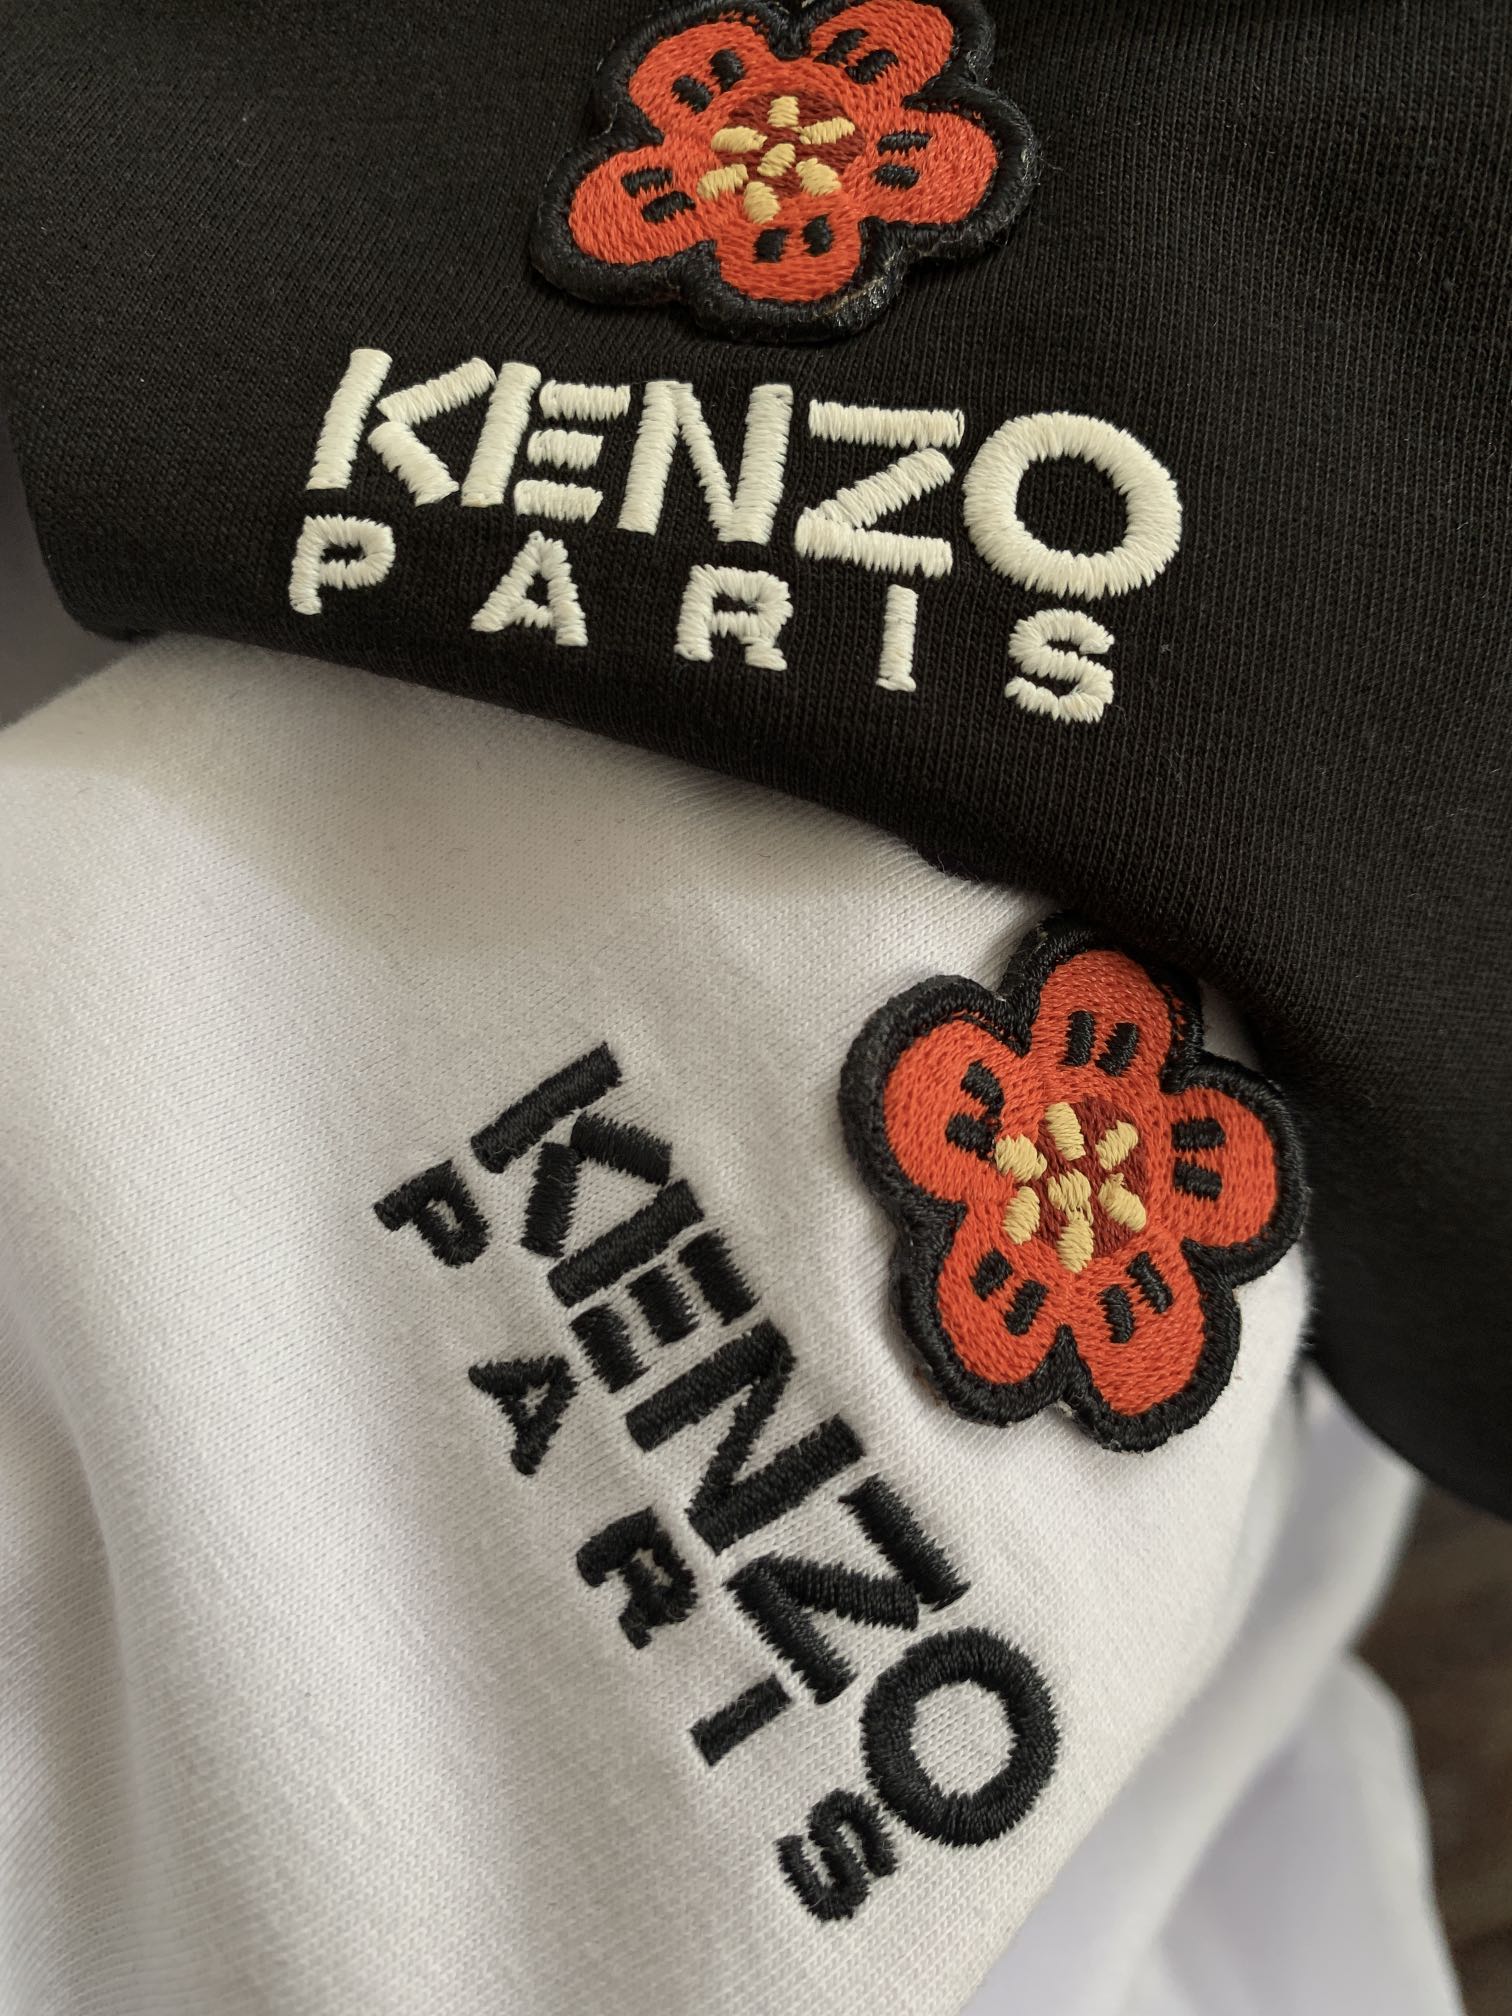 潮流品牌KENZO出自时尚教父高田贤三，结合了东方文化的沉稳意境、拉丁民族的热情活泼，取自大自然的图案作为自身的DNA，创造出活泼明亮、优雅独特的作品。易烊千玺同款kenzo/送你一朵海棠花，24新款BOKE海棠花经典刺绣徽标短袖T恤，官网同步在售，超多明星上身引爆，当红炸子鸡的单品，日常宽松的休闲版型，直筒中性剪裁，整体简约干净，胸口是设计师NIGO从2月绽放的Boke (日本海棠花) 中汲取灵感，一朵刺绣的海棠花朵栩栩如生的绽放，下面是KENZO重塑后的字母logo，整个徽标寓意